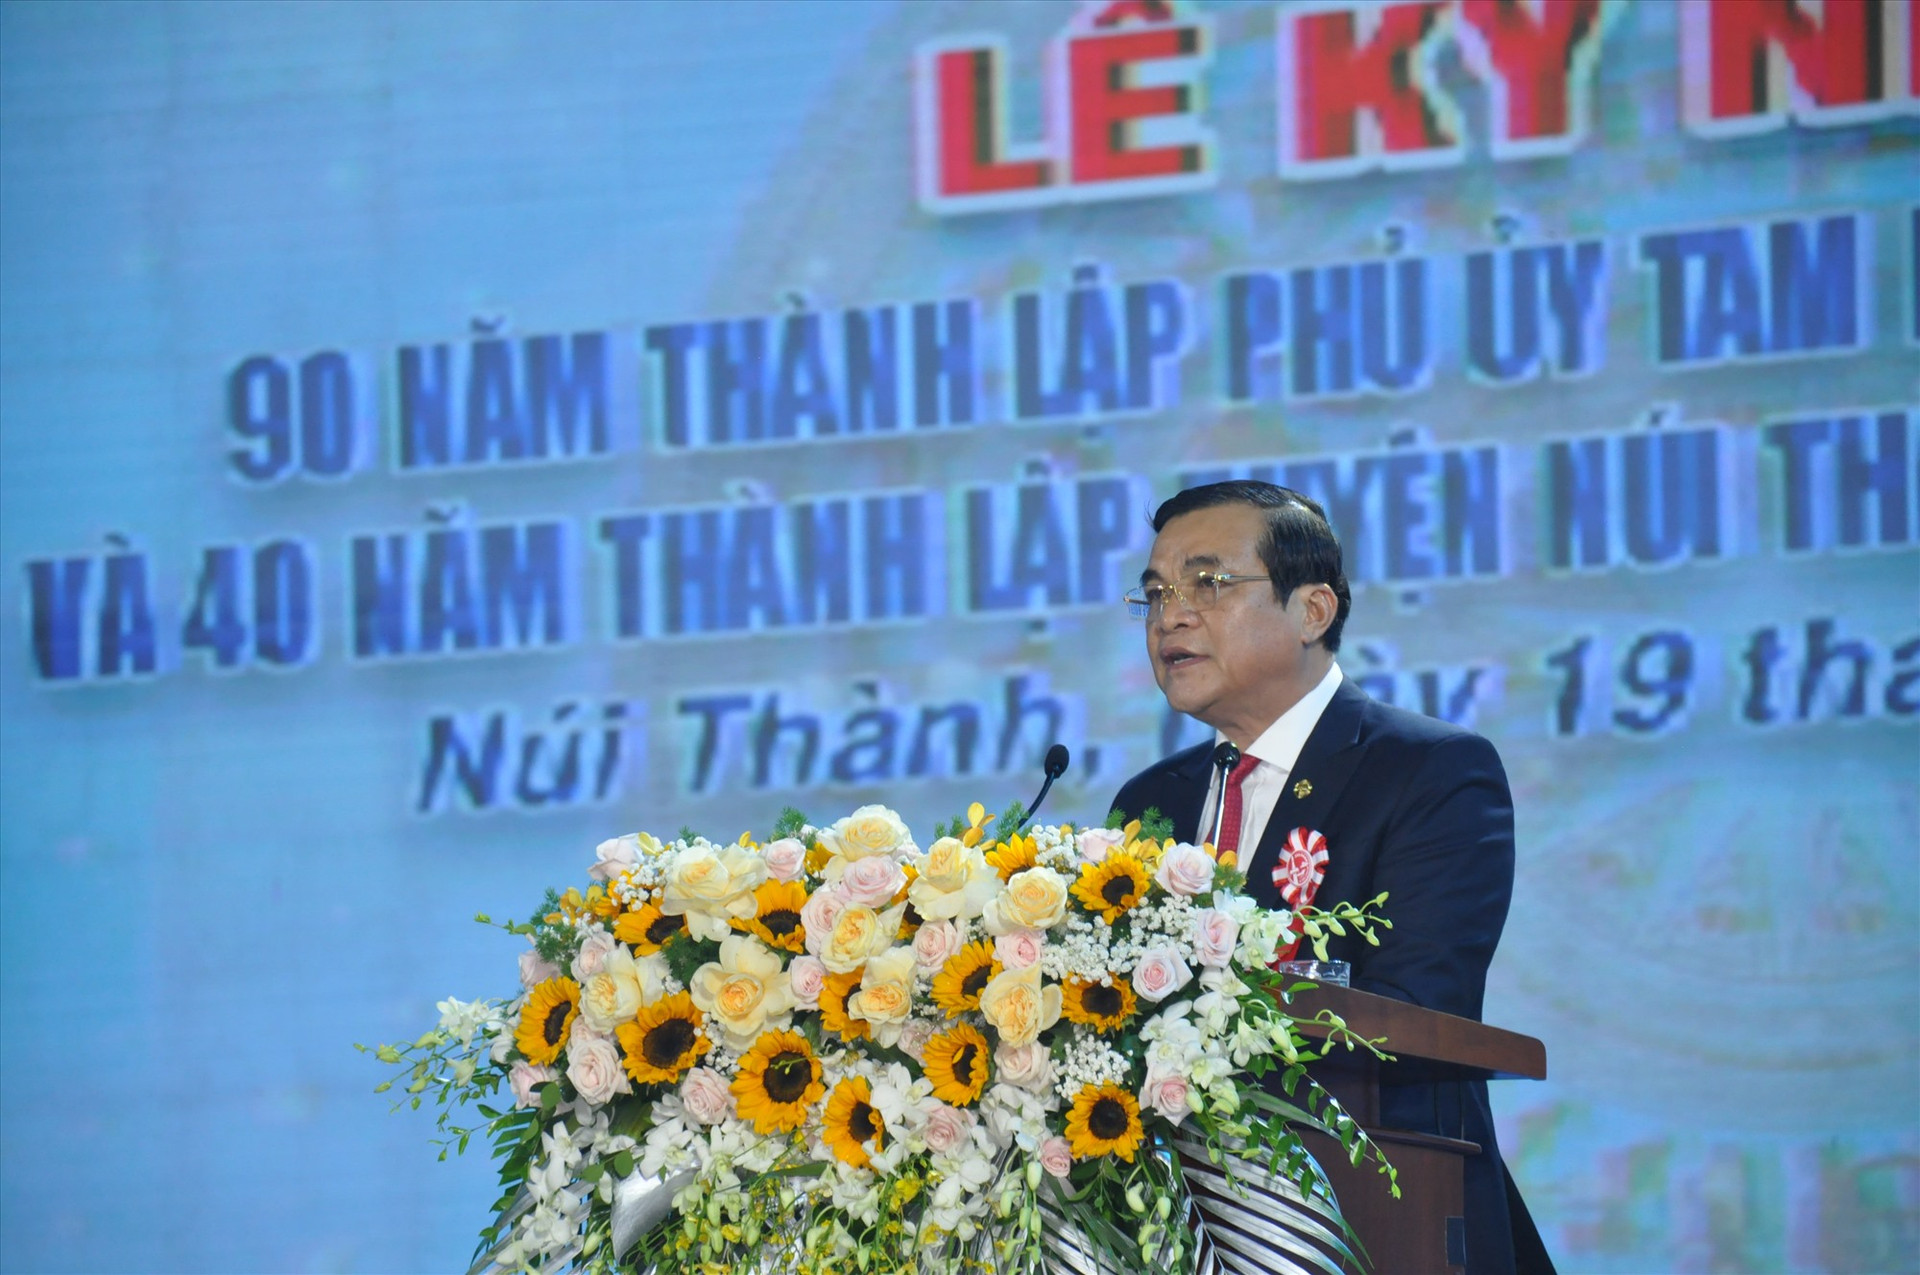 Đồng chí Phan Việt Cường - Ủy viên Trung ương Đảng, Bí thư Tỉnh ủy, Chủ tịch HĐND tỉnh bài phát biểu tại buổi lễ kỷ niệm, Ảnh: NĐ.